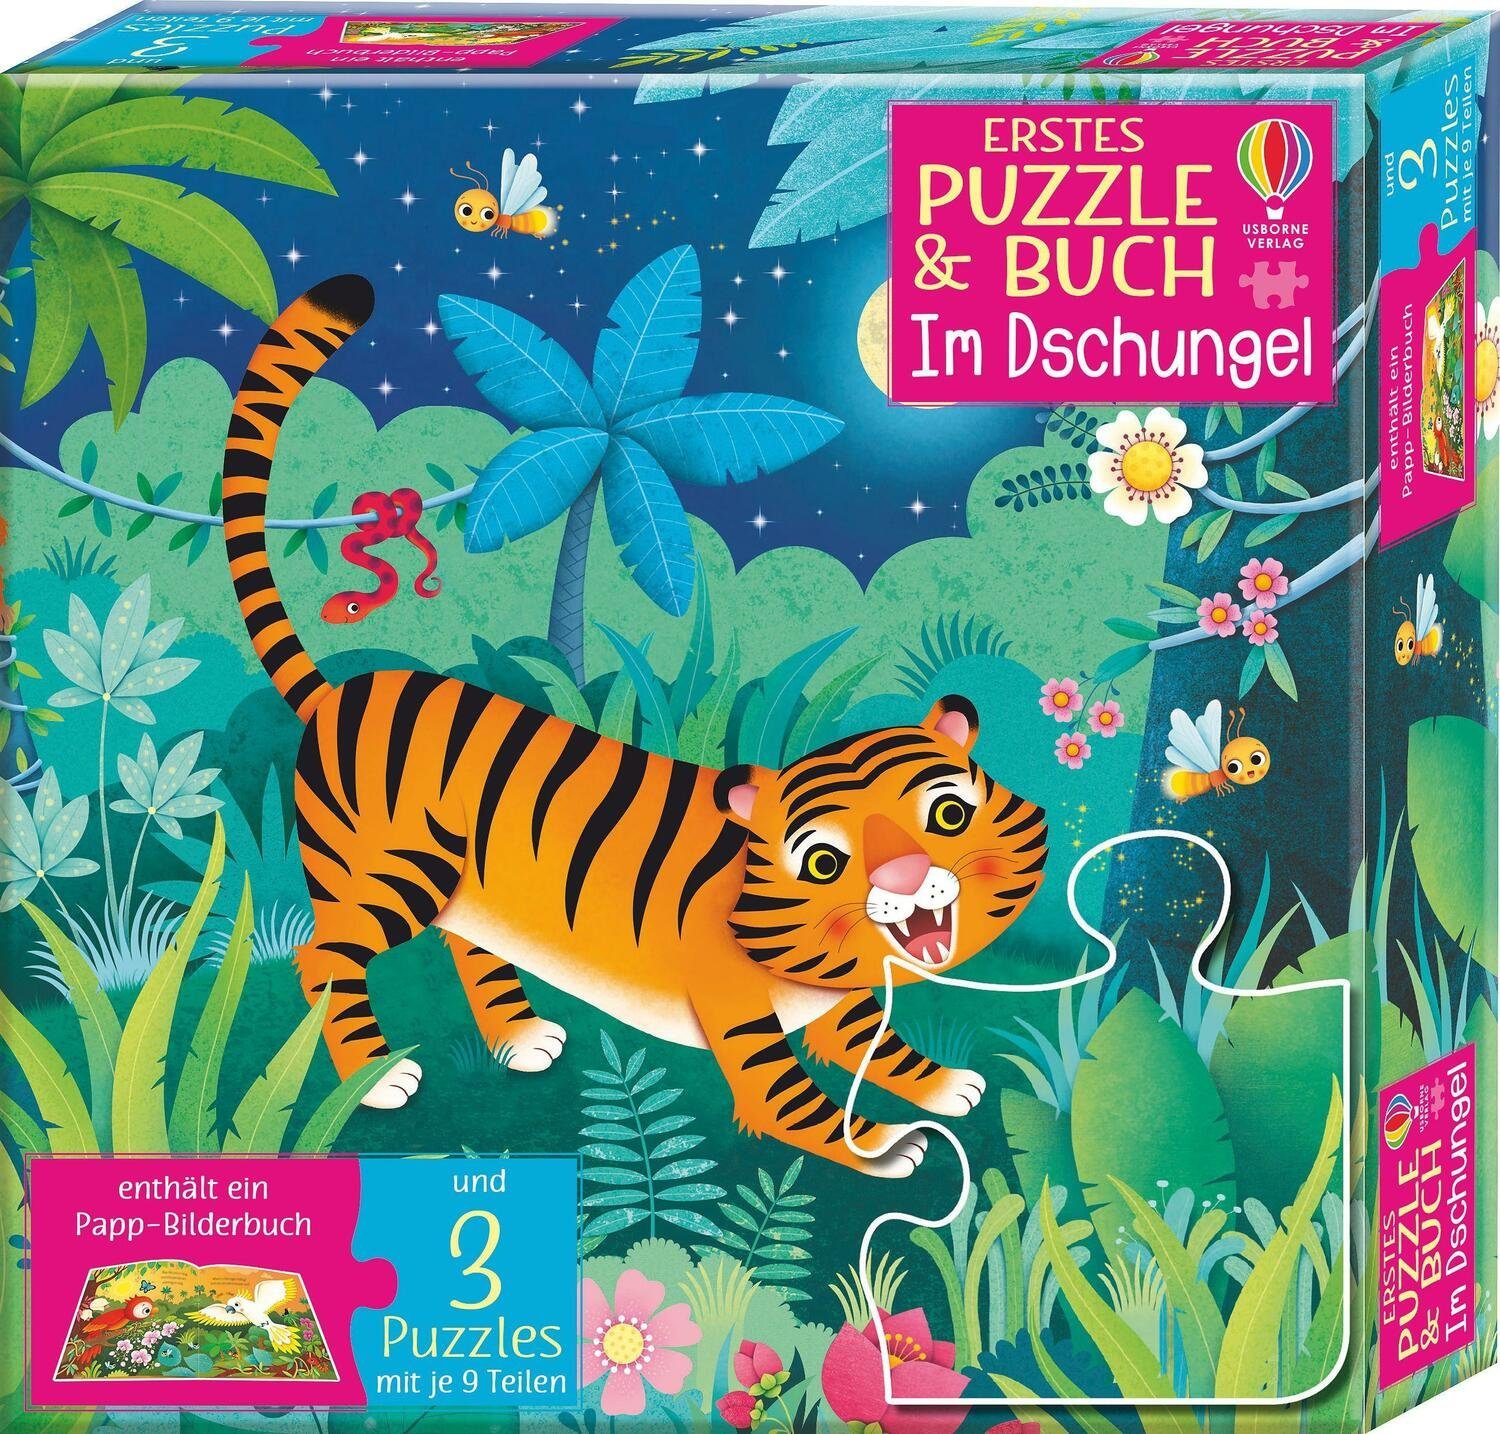 Usborne Verlag Puzzle Erstes Puzzle Puzzleteile Dschungel, & Buch: Im